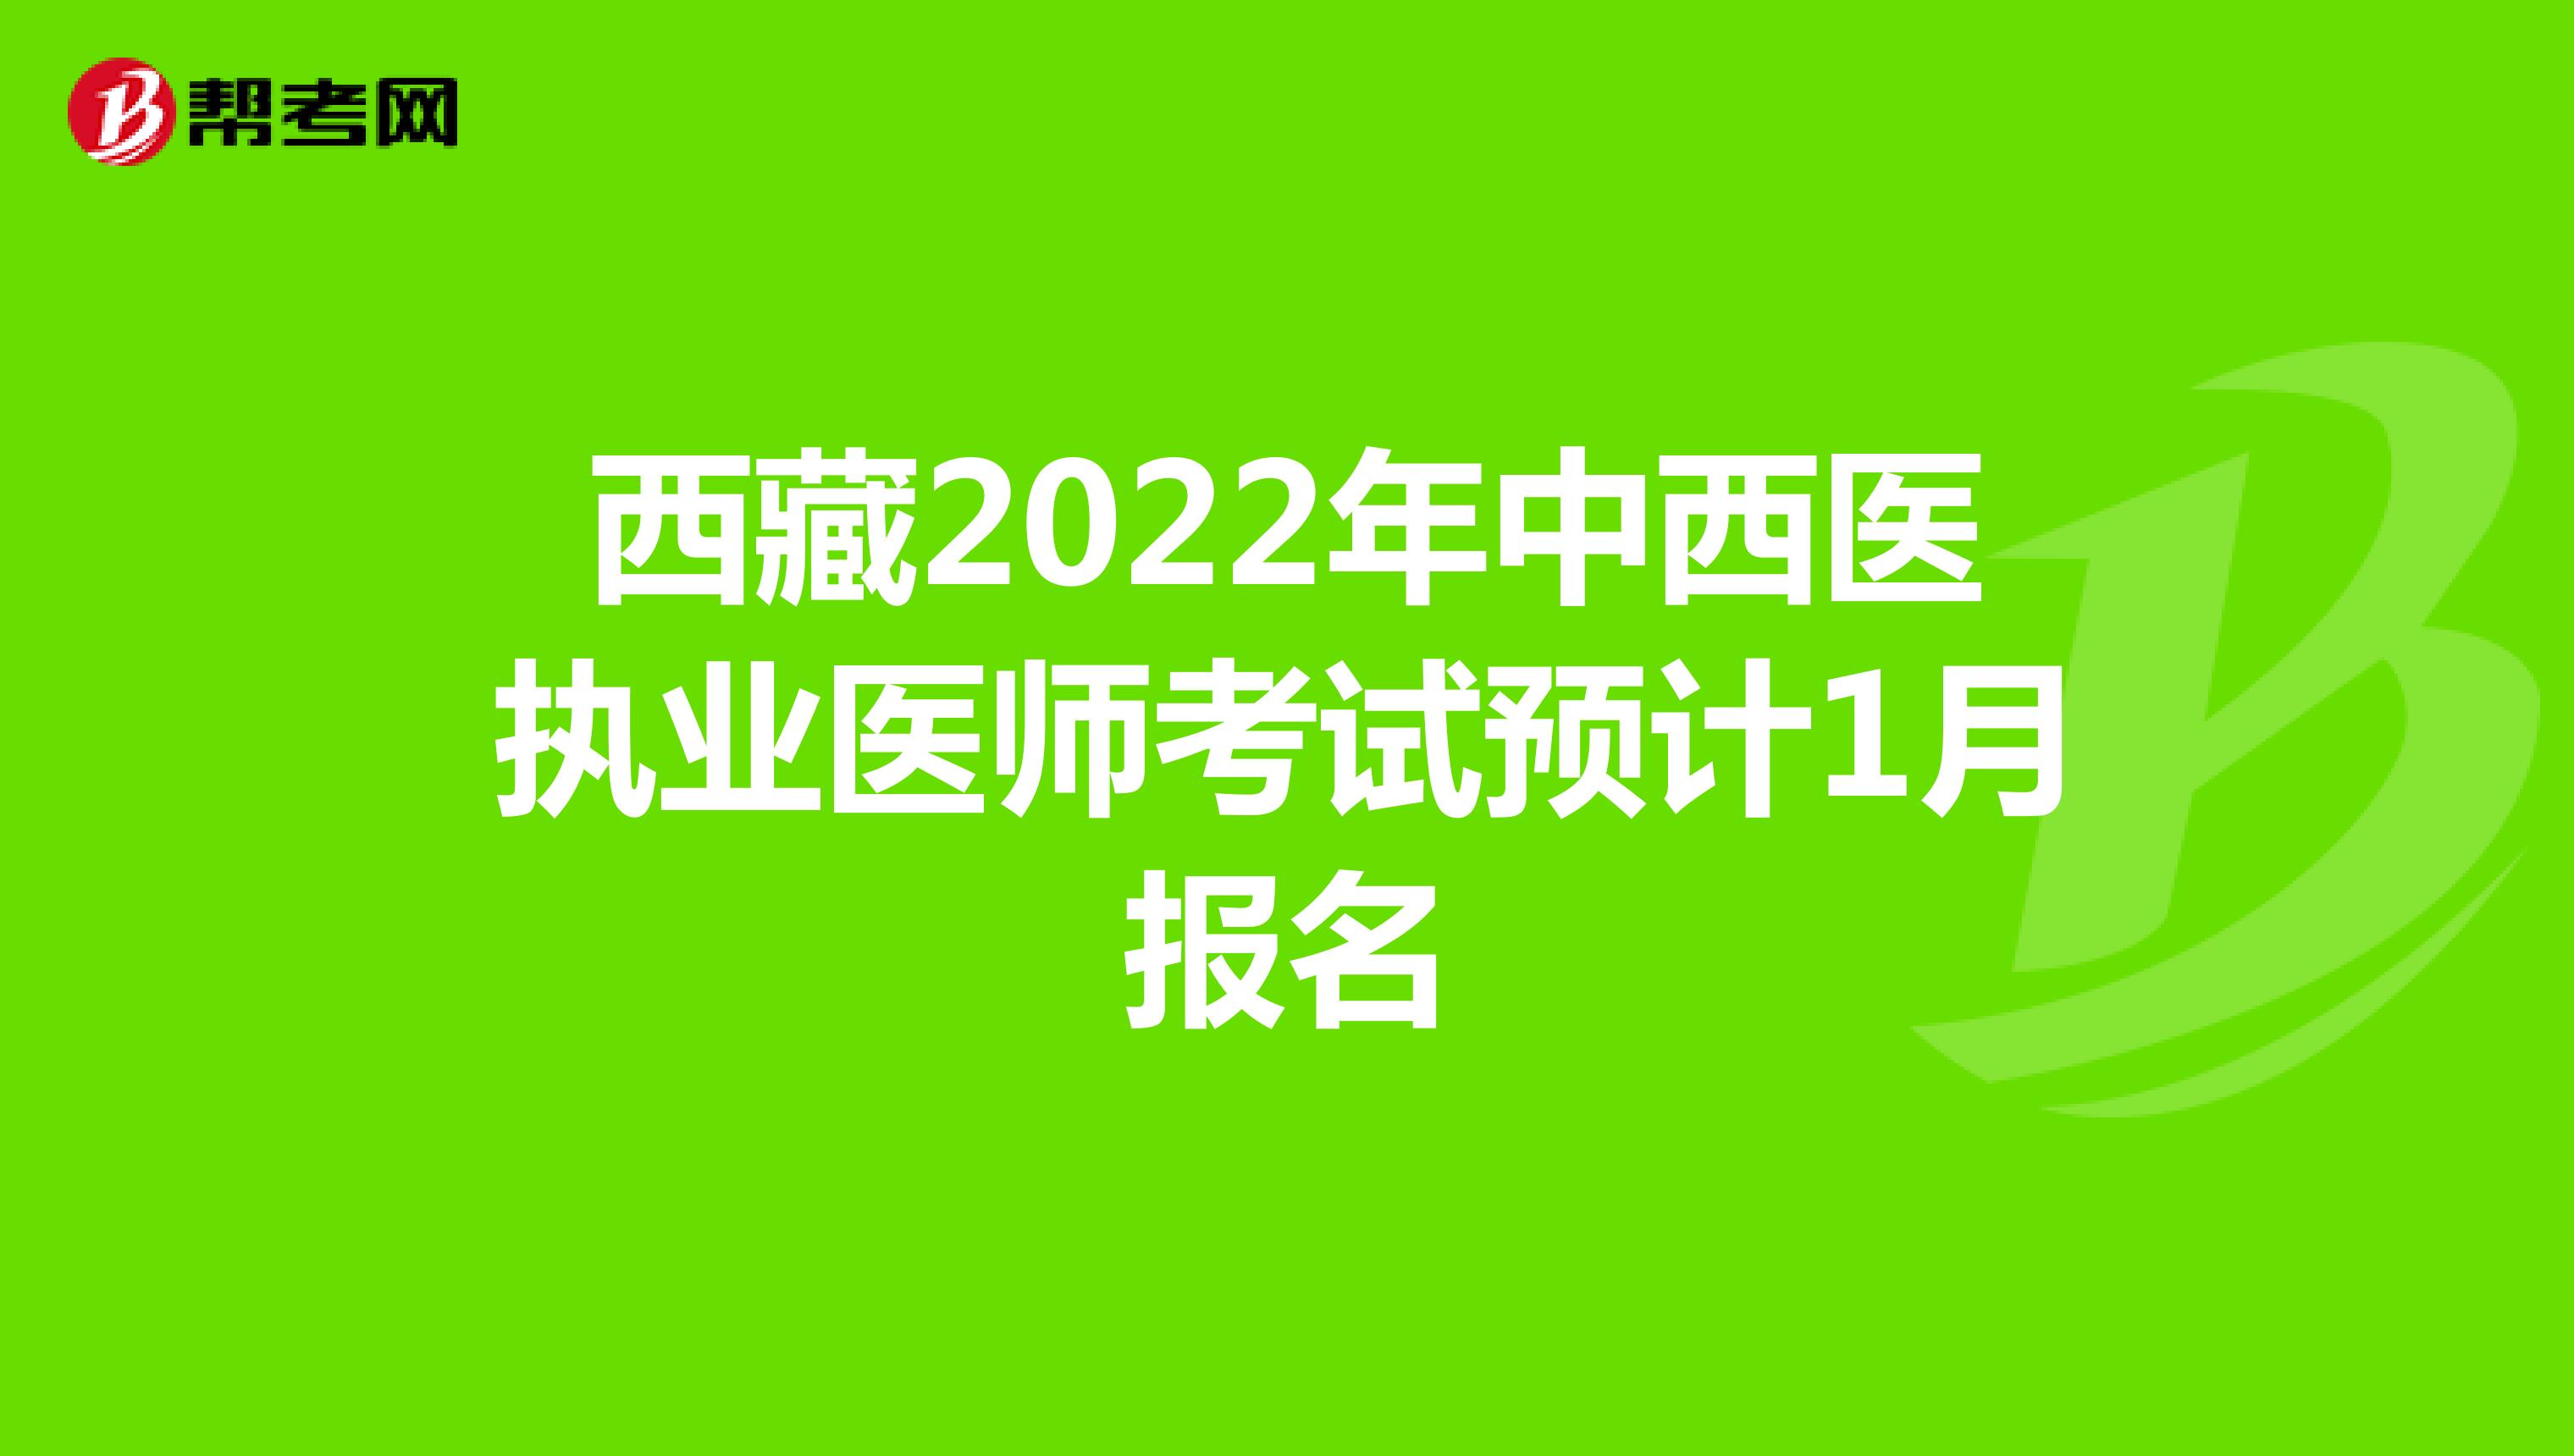 西藏2022年中西医执业医师考试预计1月报名